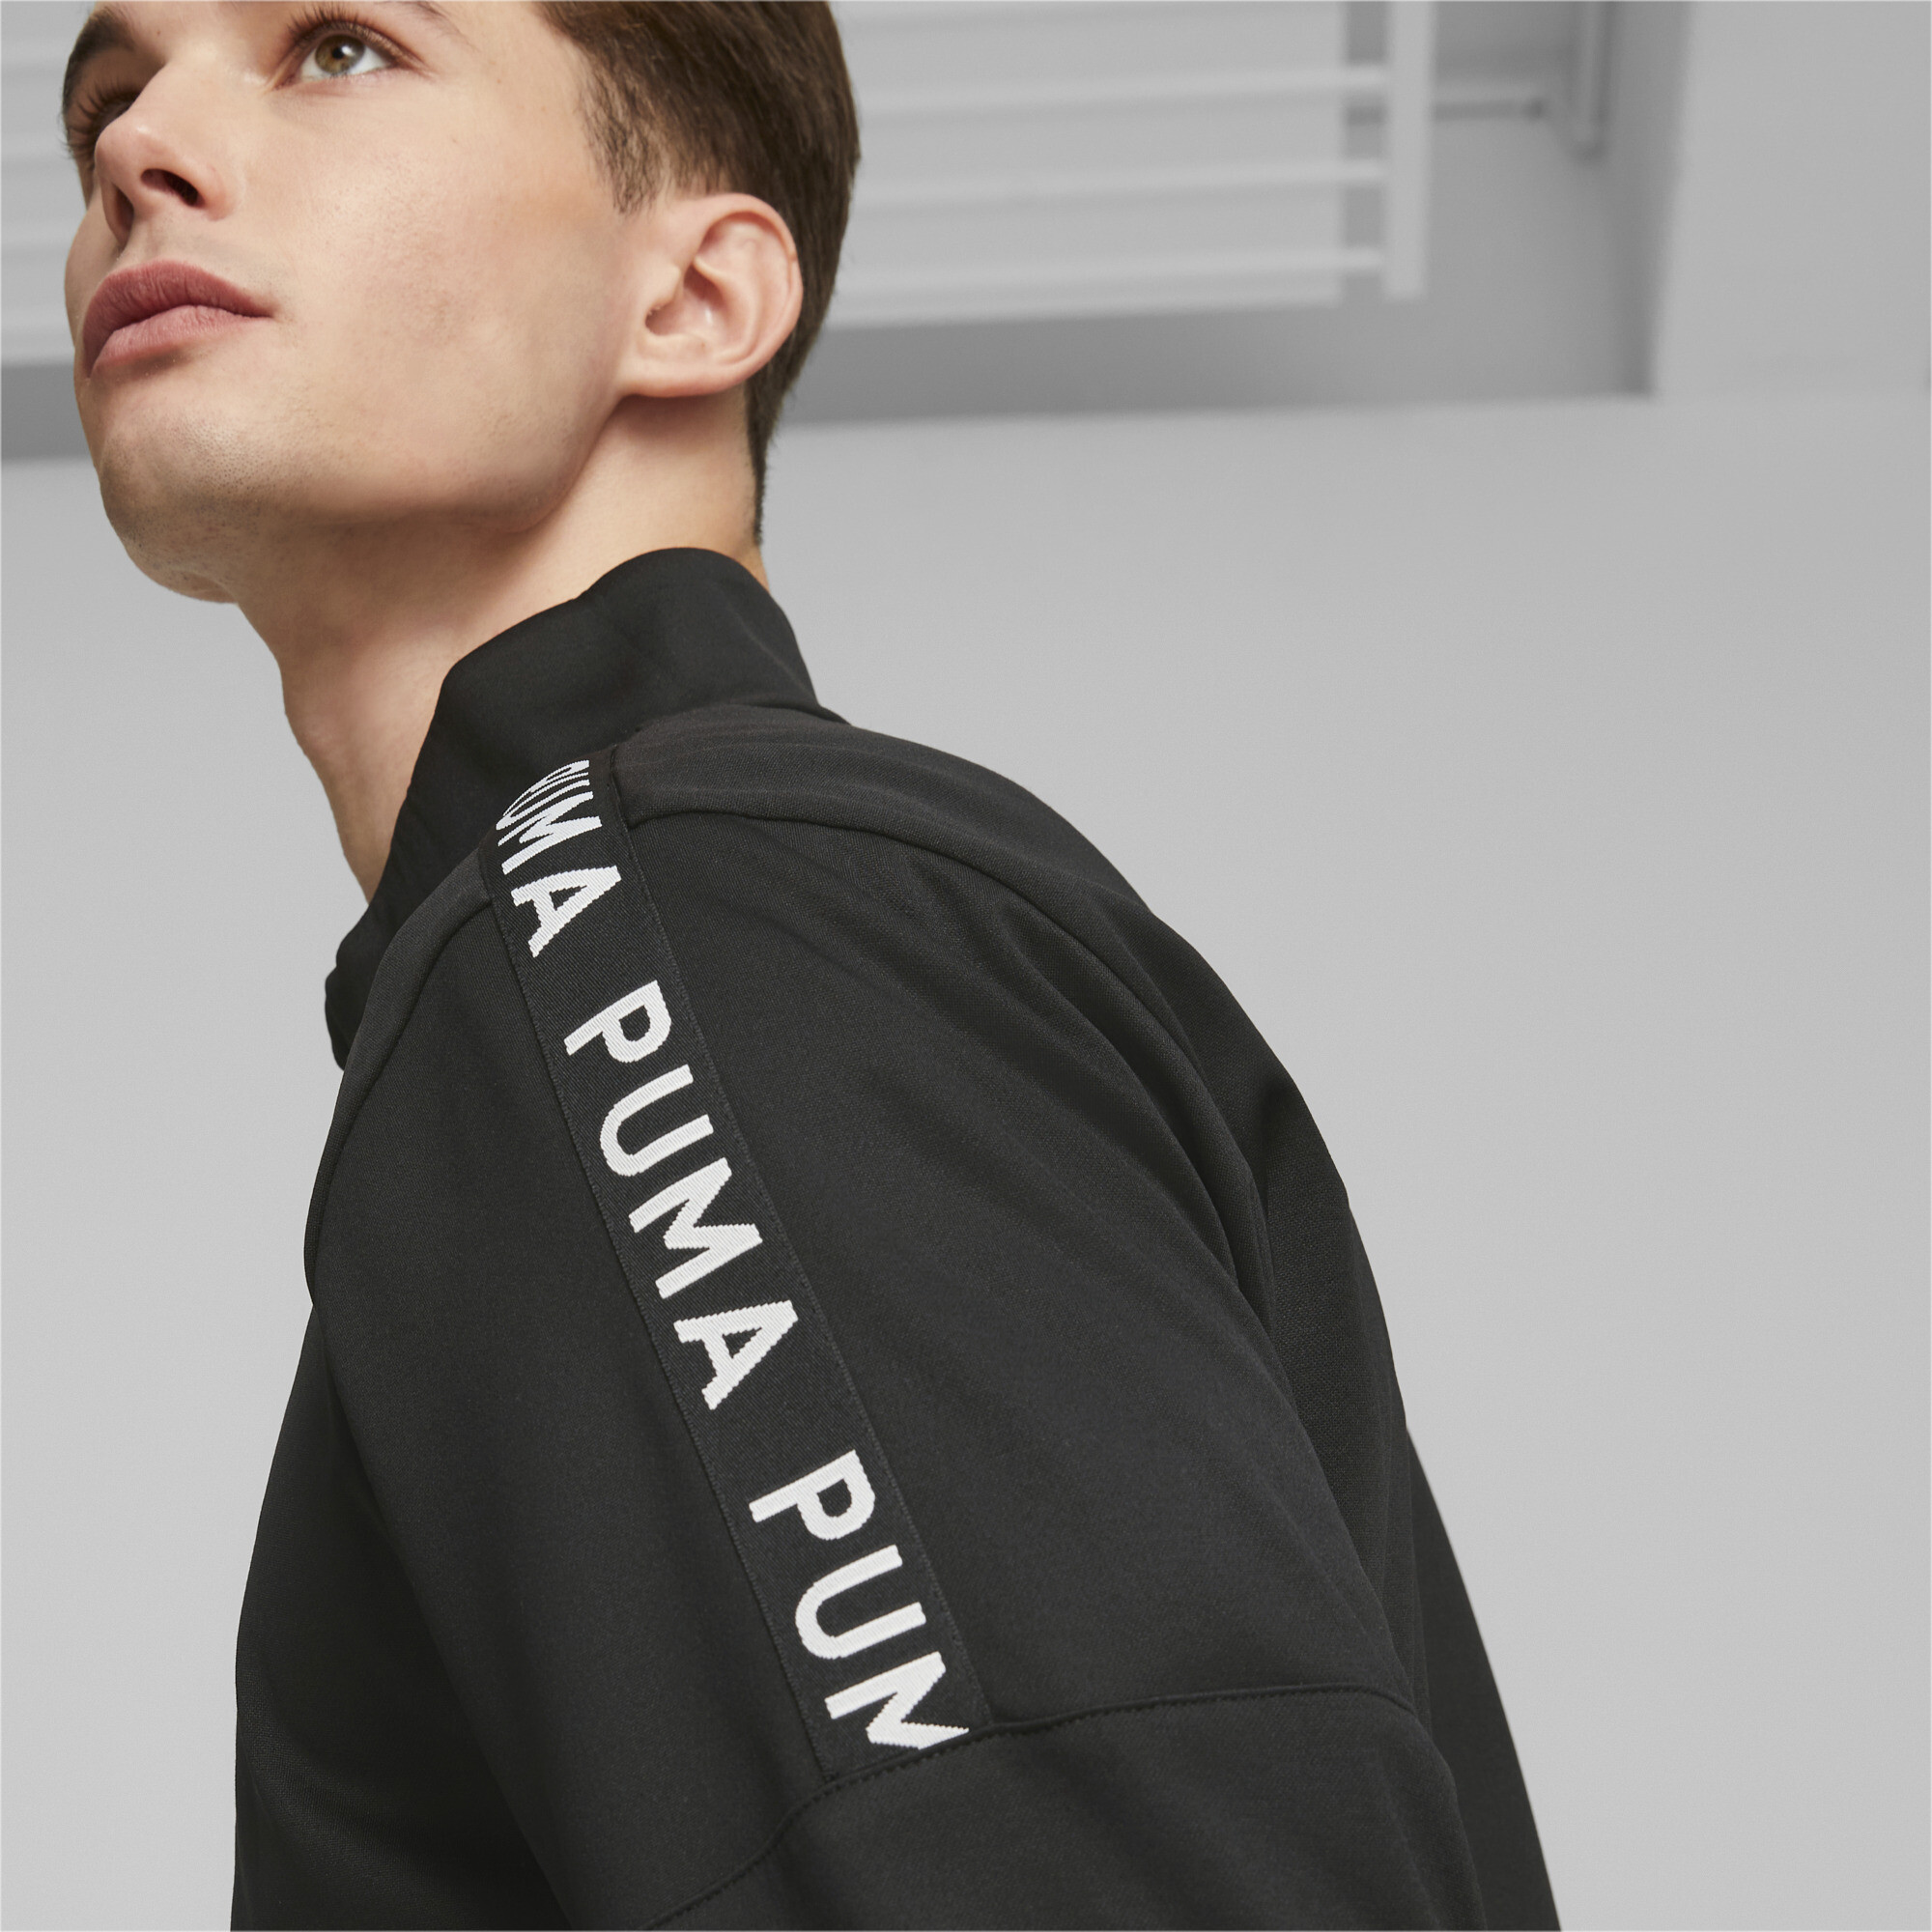 Men's PUMA Fit Light PWRFLEECE Full-Zip Training Jacket Men In Black, Size 2XL